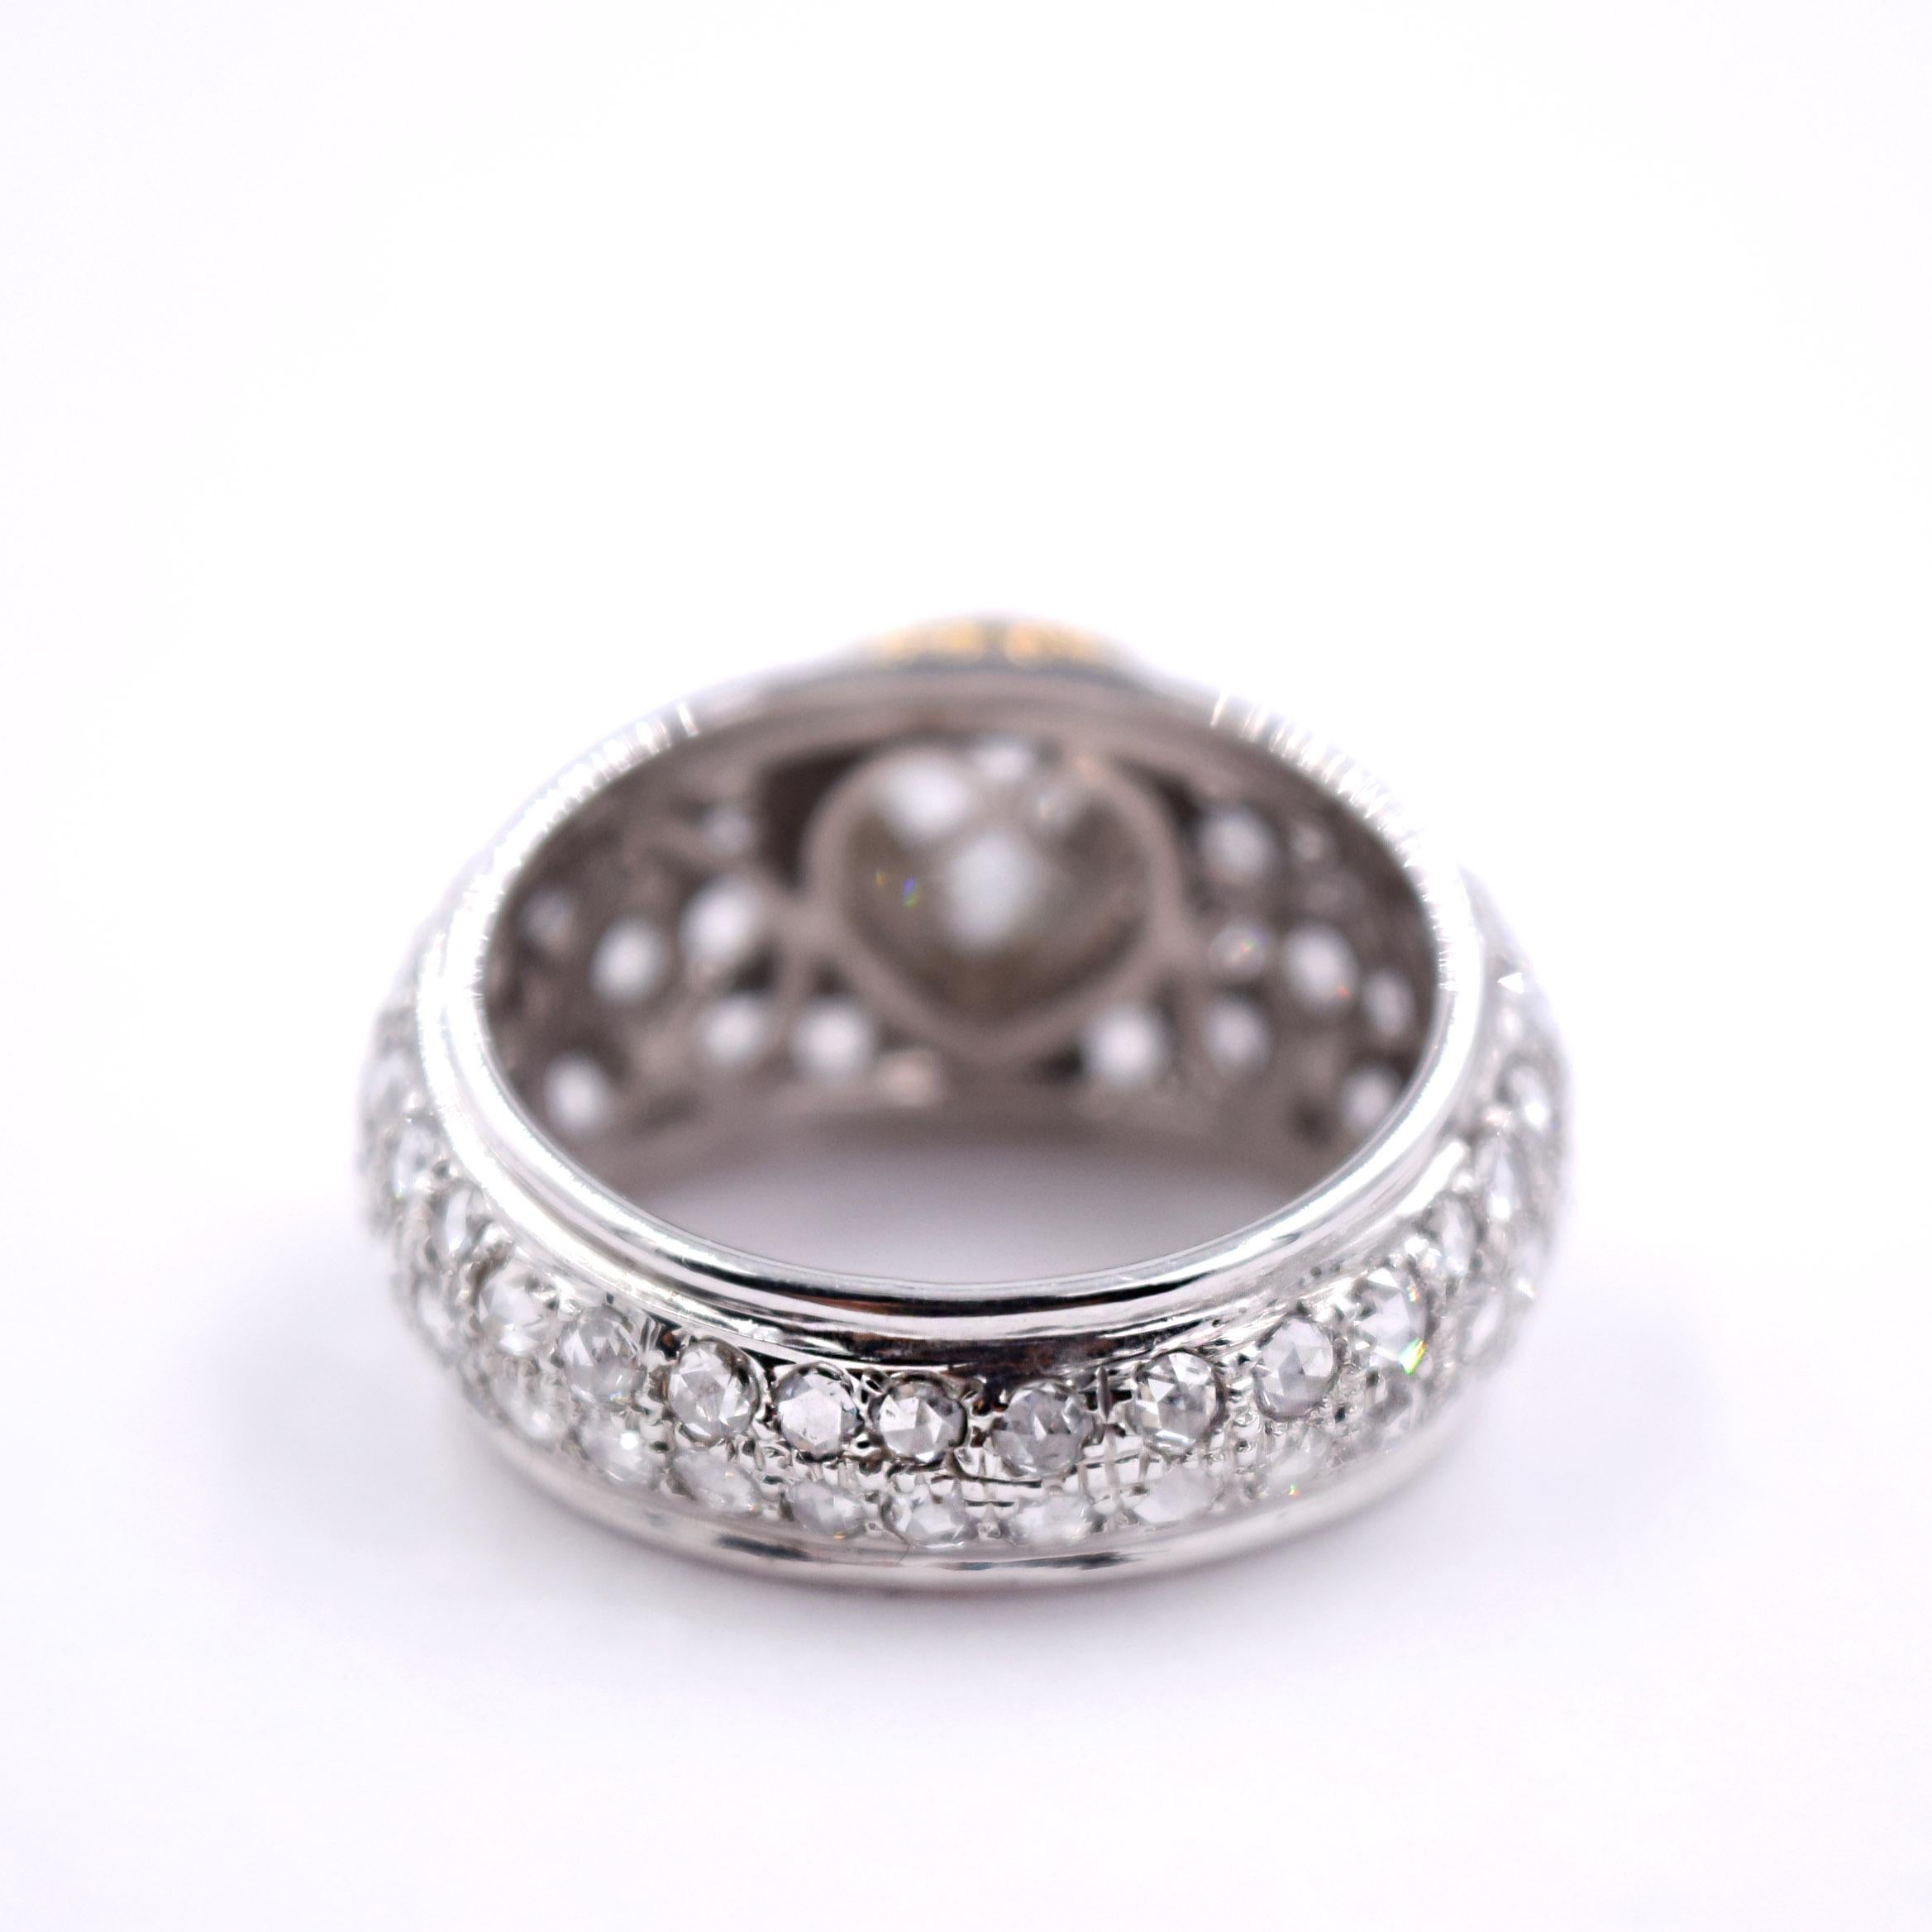 Sethi Couture 3.13 Carat Rose Cut Diamond Statement Ring in 18 Karat White Gold For Sale 1